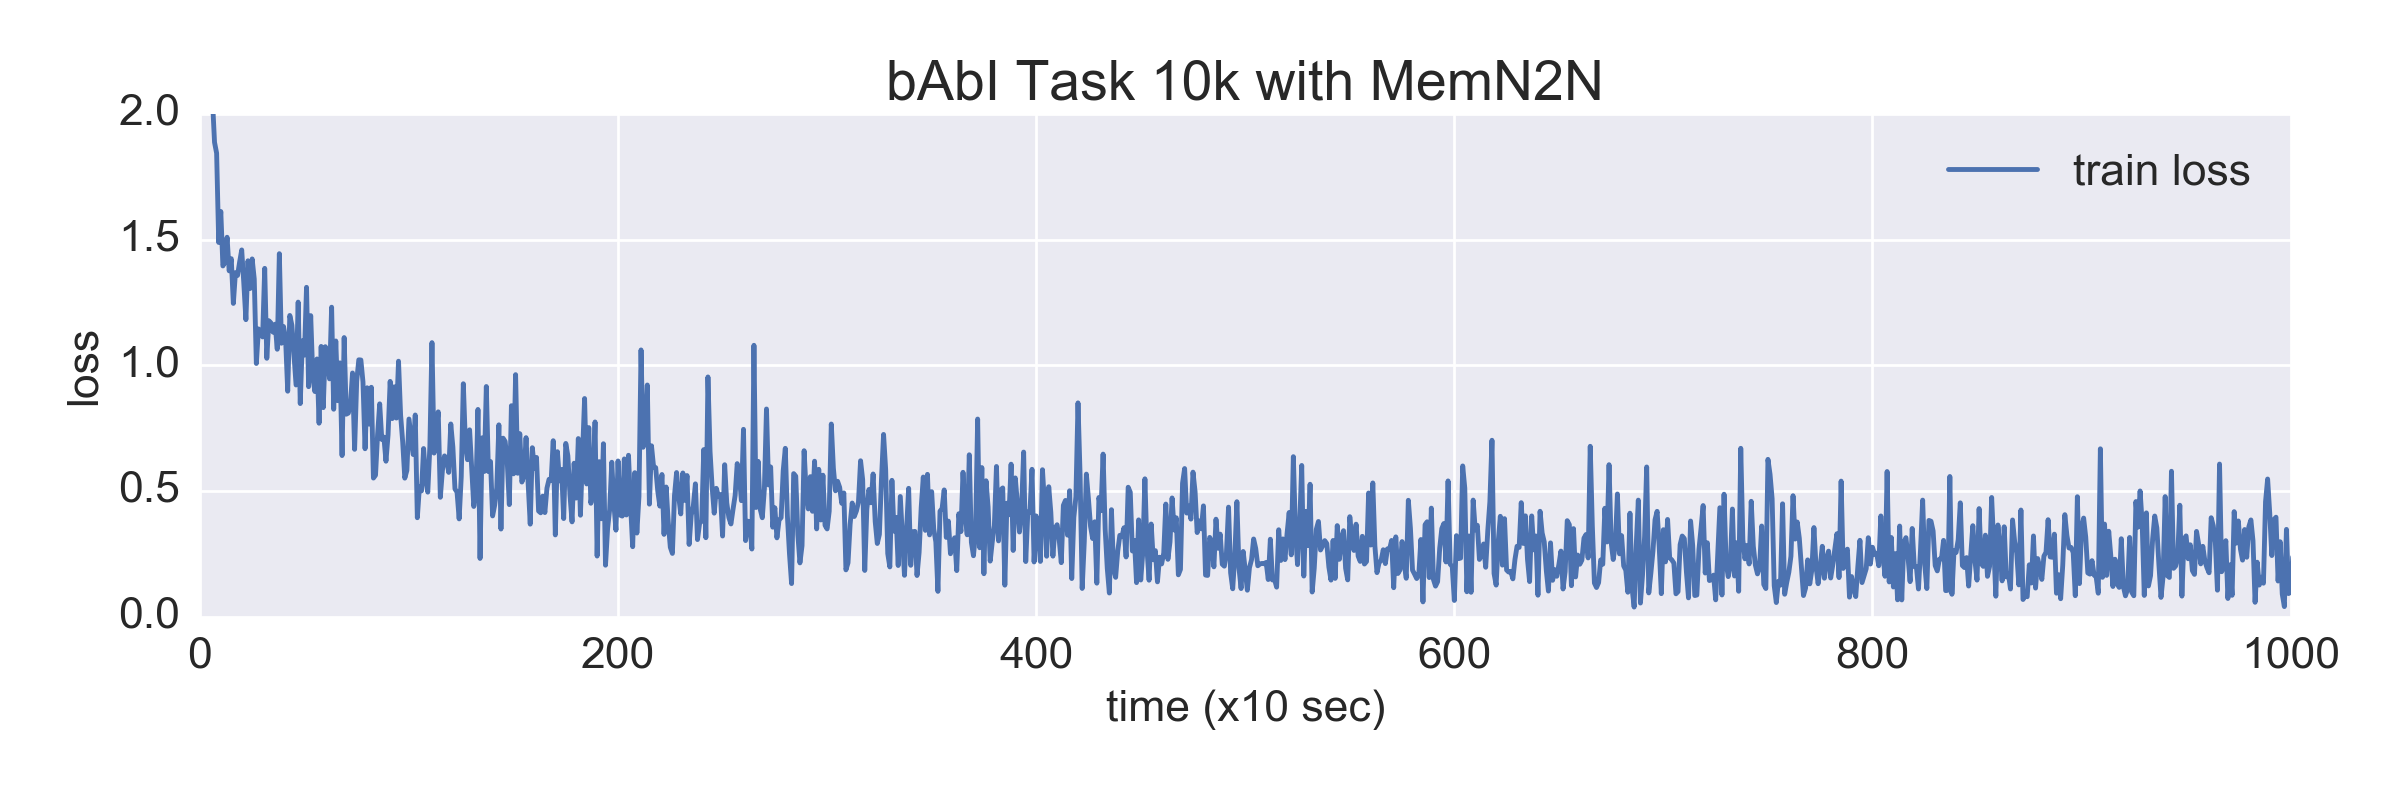 bAbI Task 10k with MemN2N